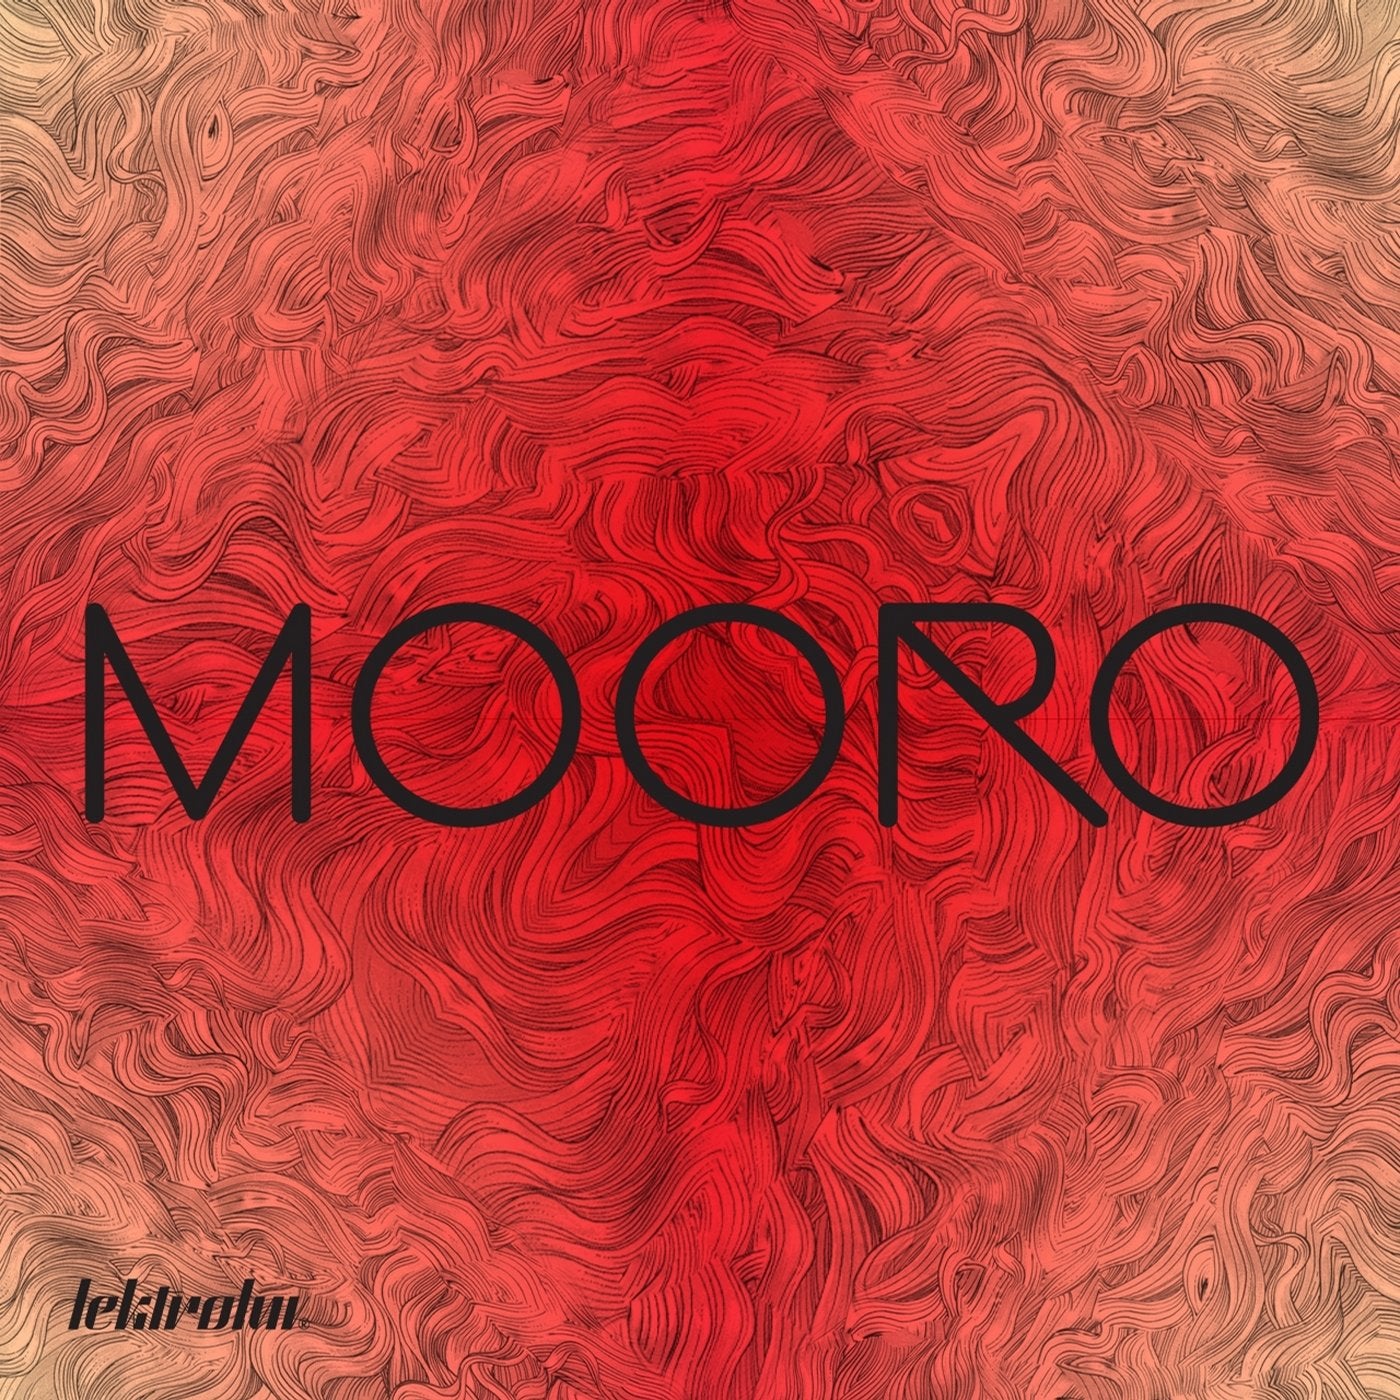 Mooro EP